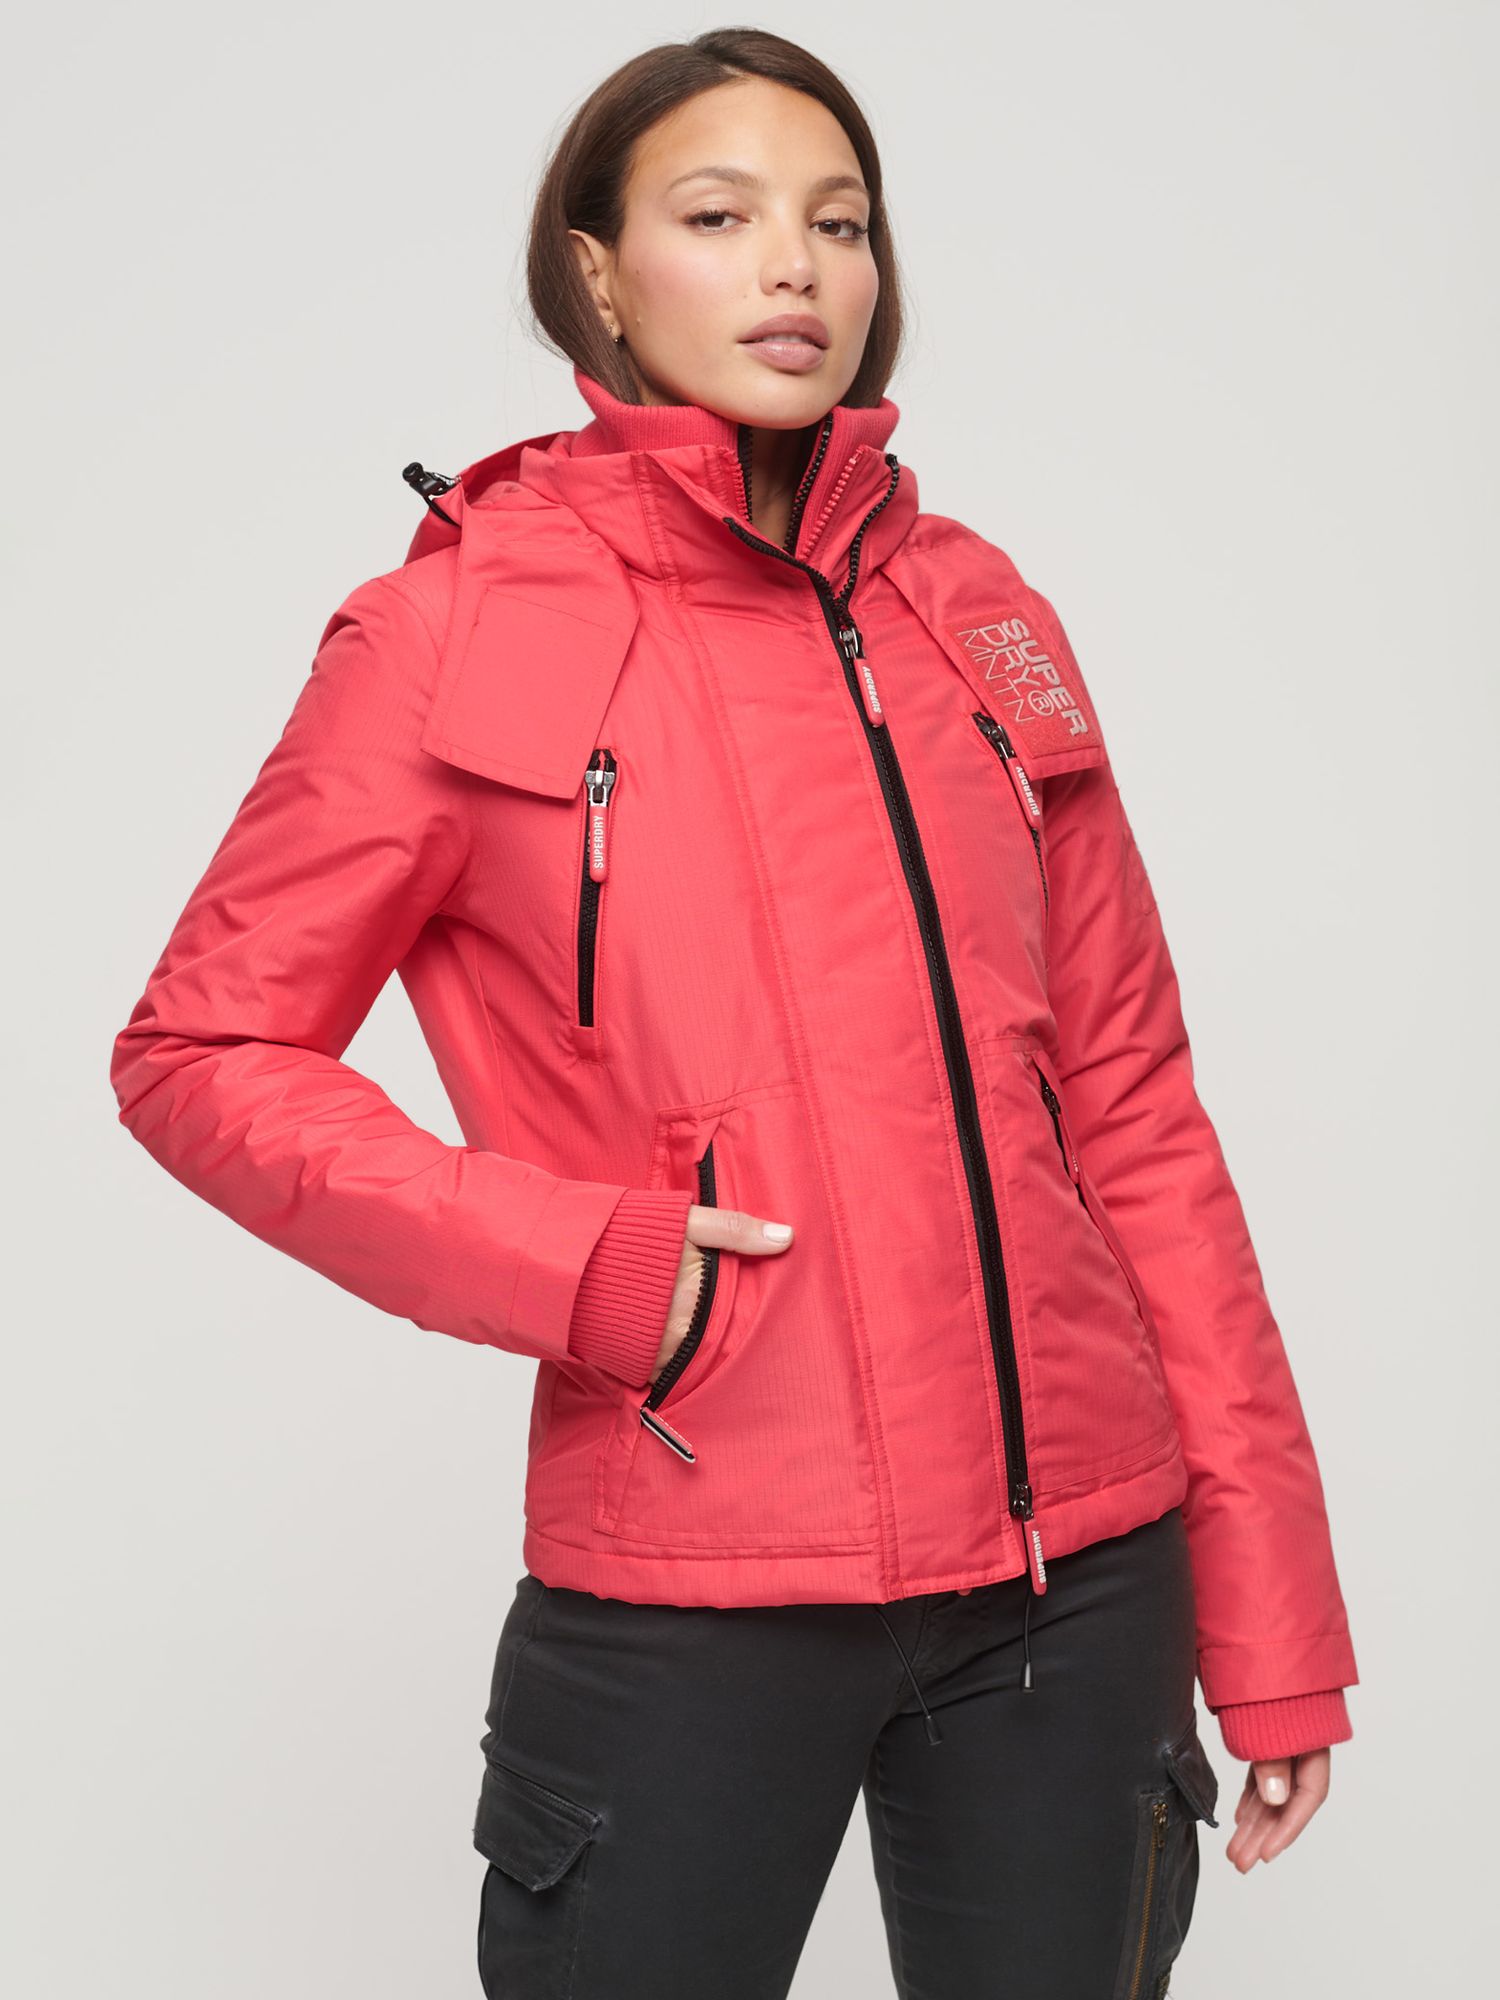 Куртка-ветровка Mountain SD Superdry, активный розовый ветровка superdry размер 10 бежевый коричневый